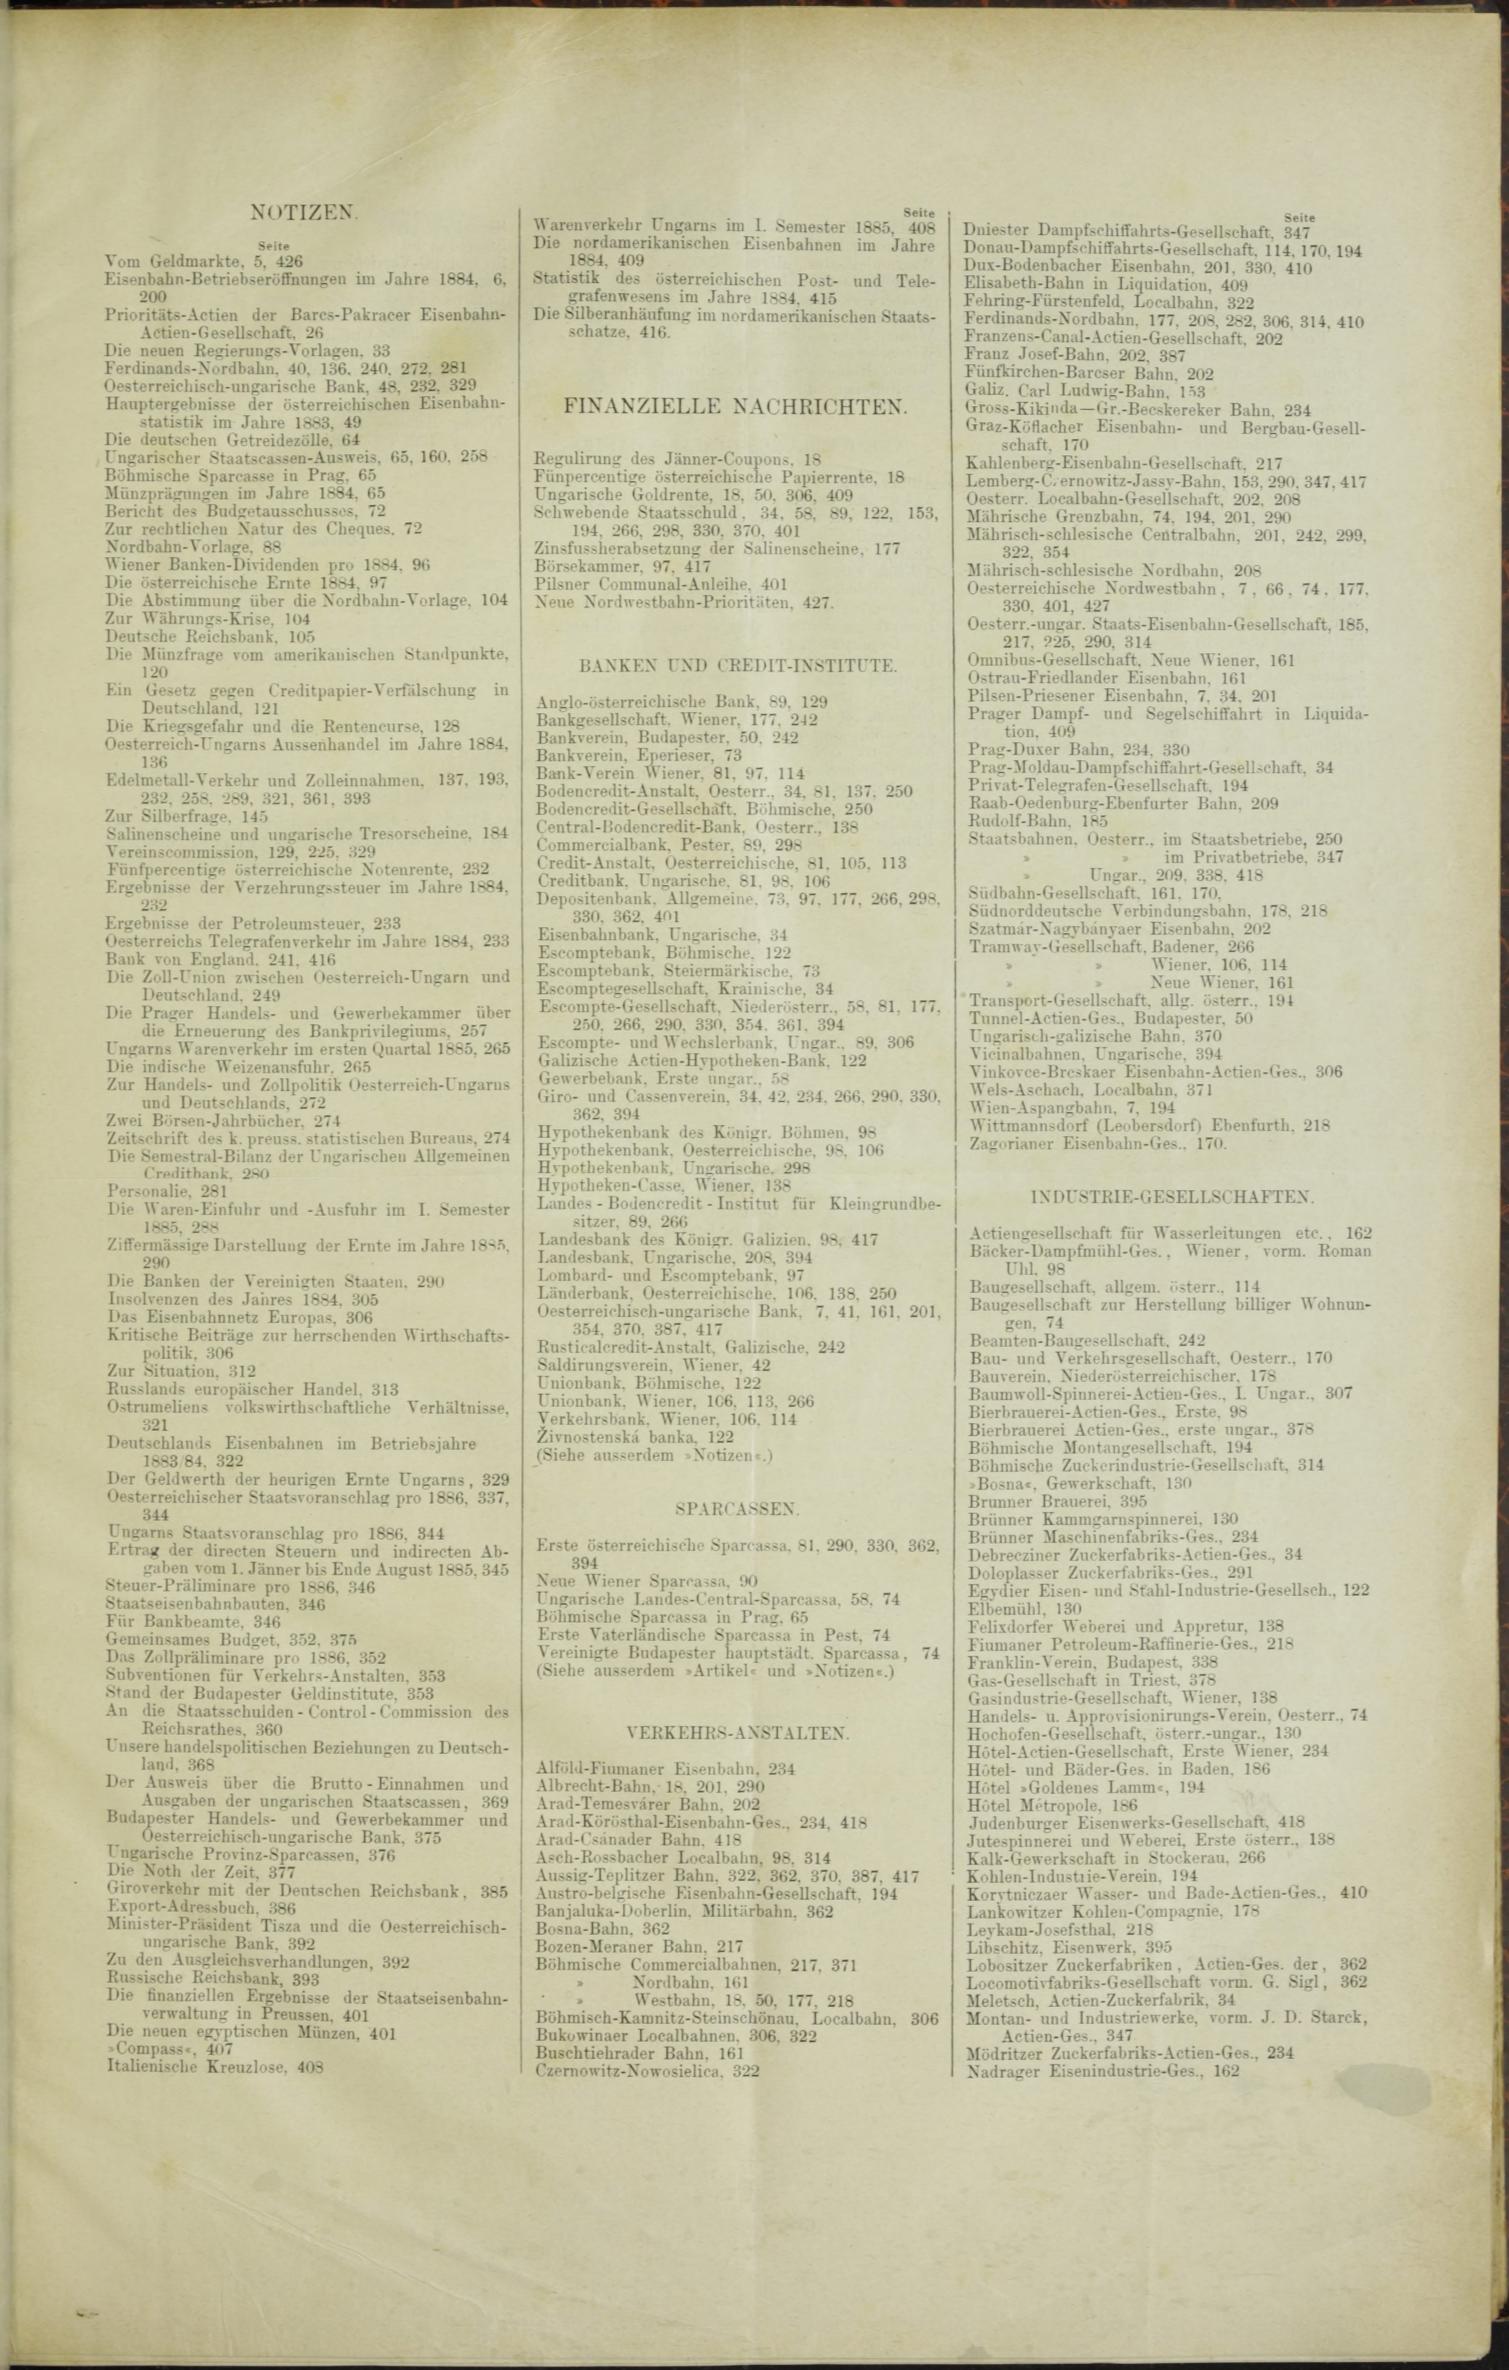 Der Tresor 08.10.1885 - Seite 11